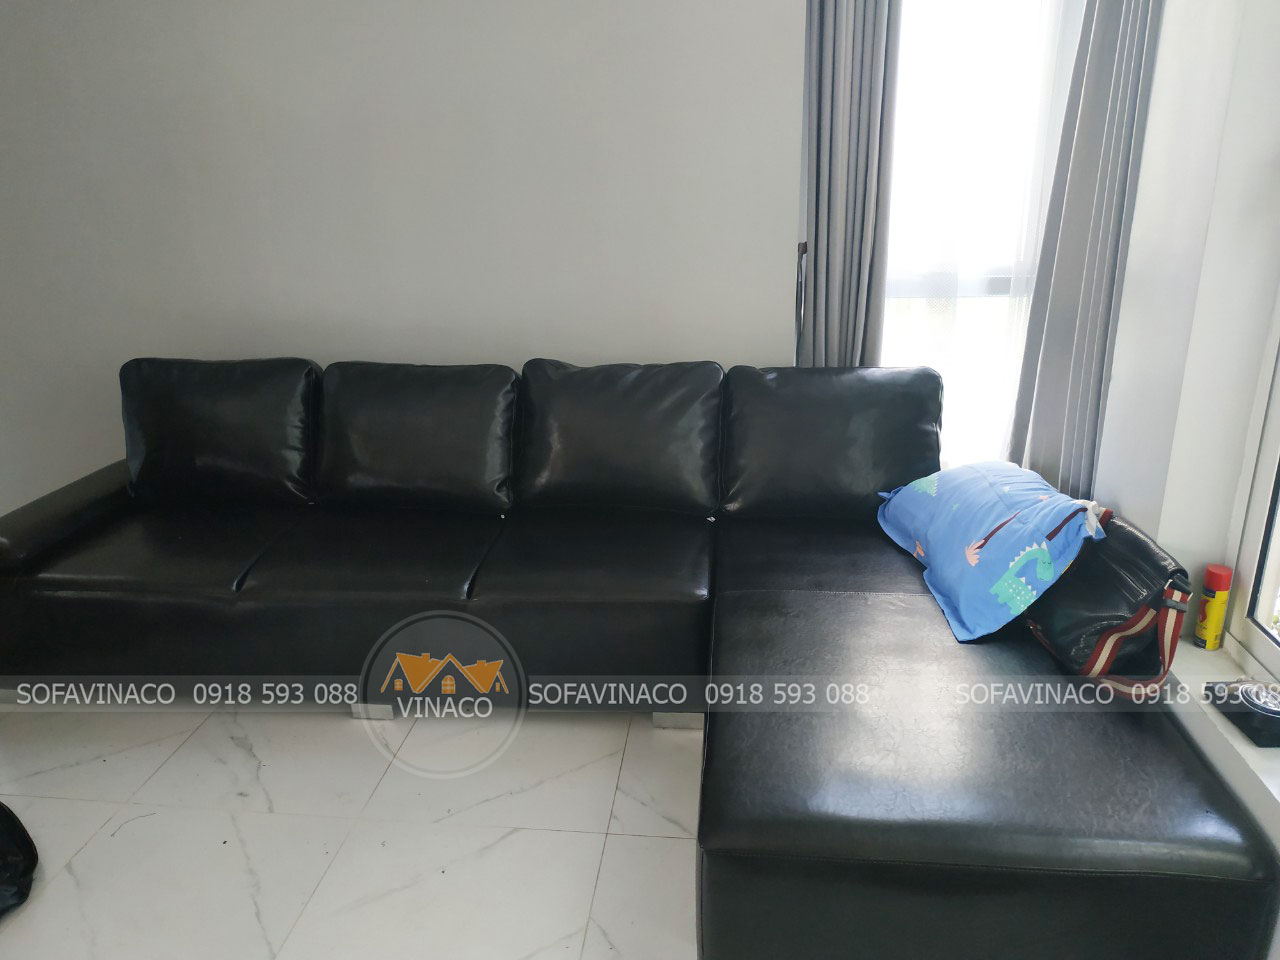 Bọc ghế sofa quận 6 địa chỉ bọc ghế đáng tin cậy Thành phố Hồ Chí Minh